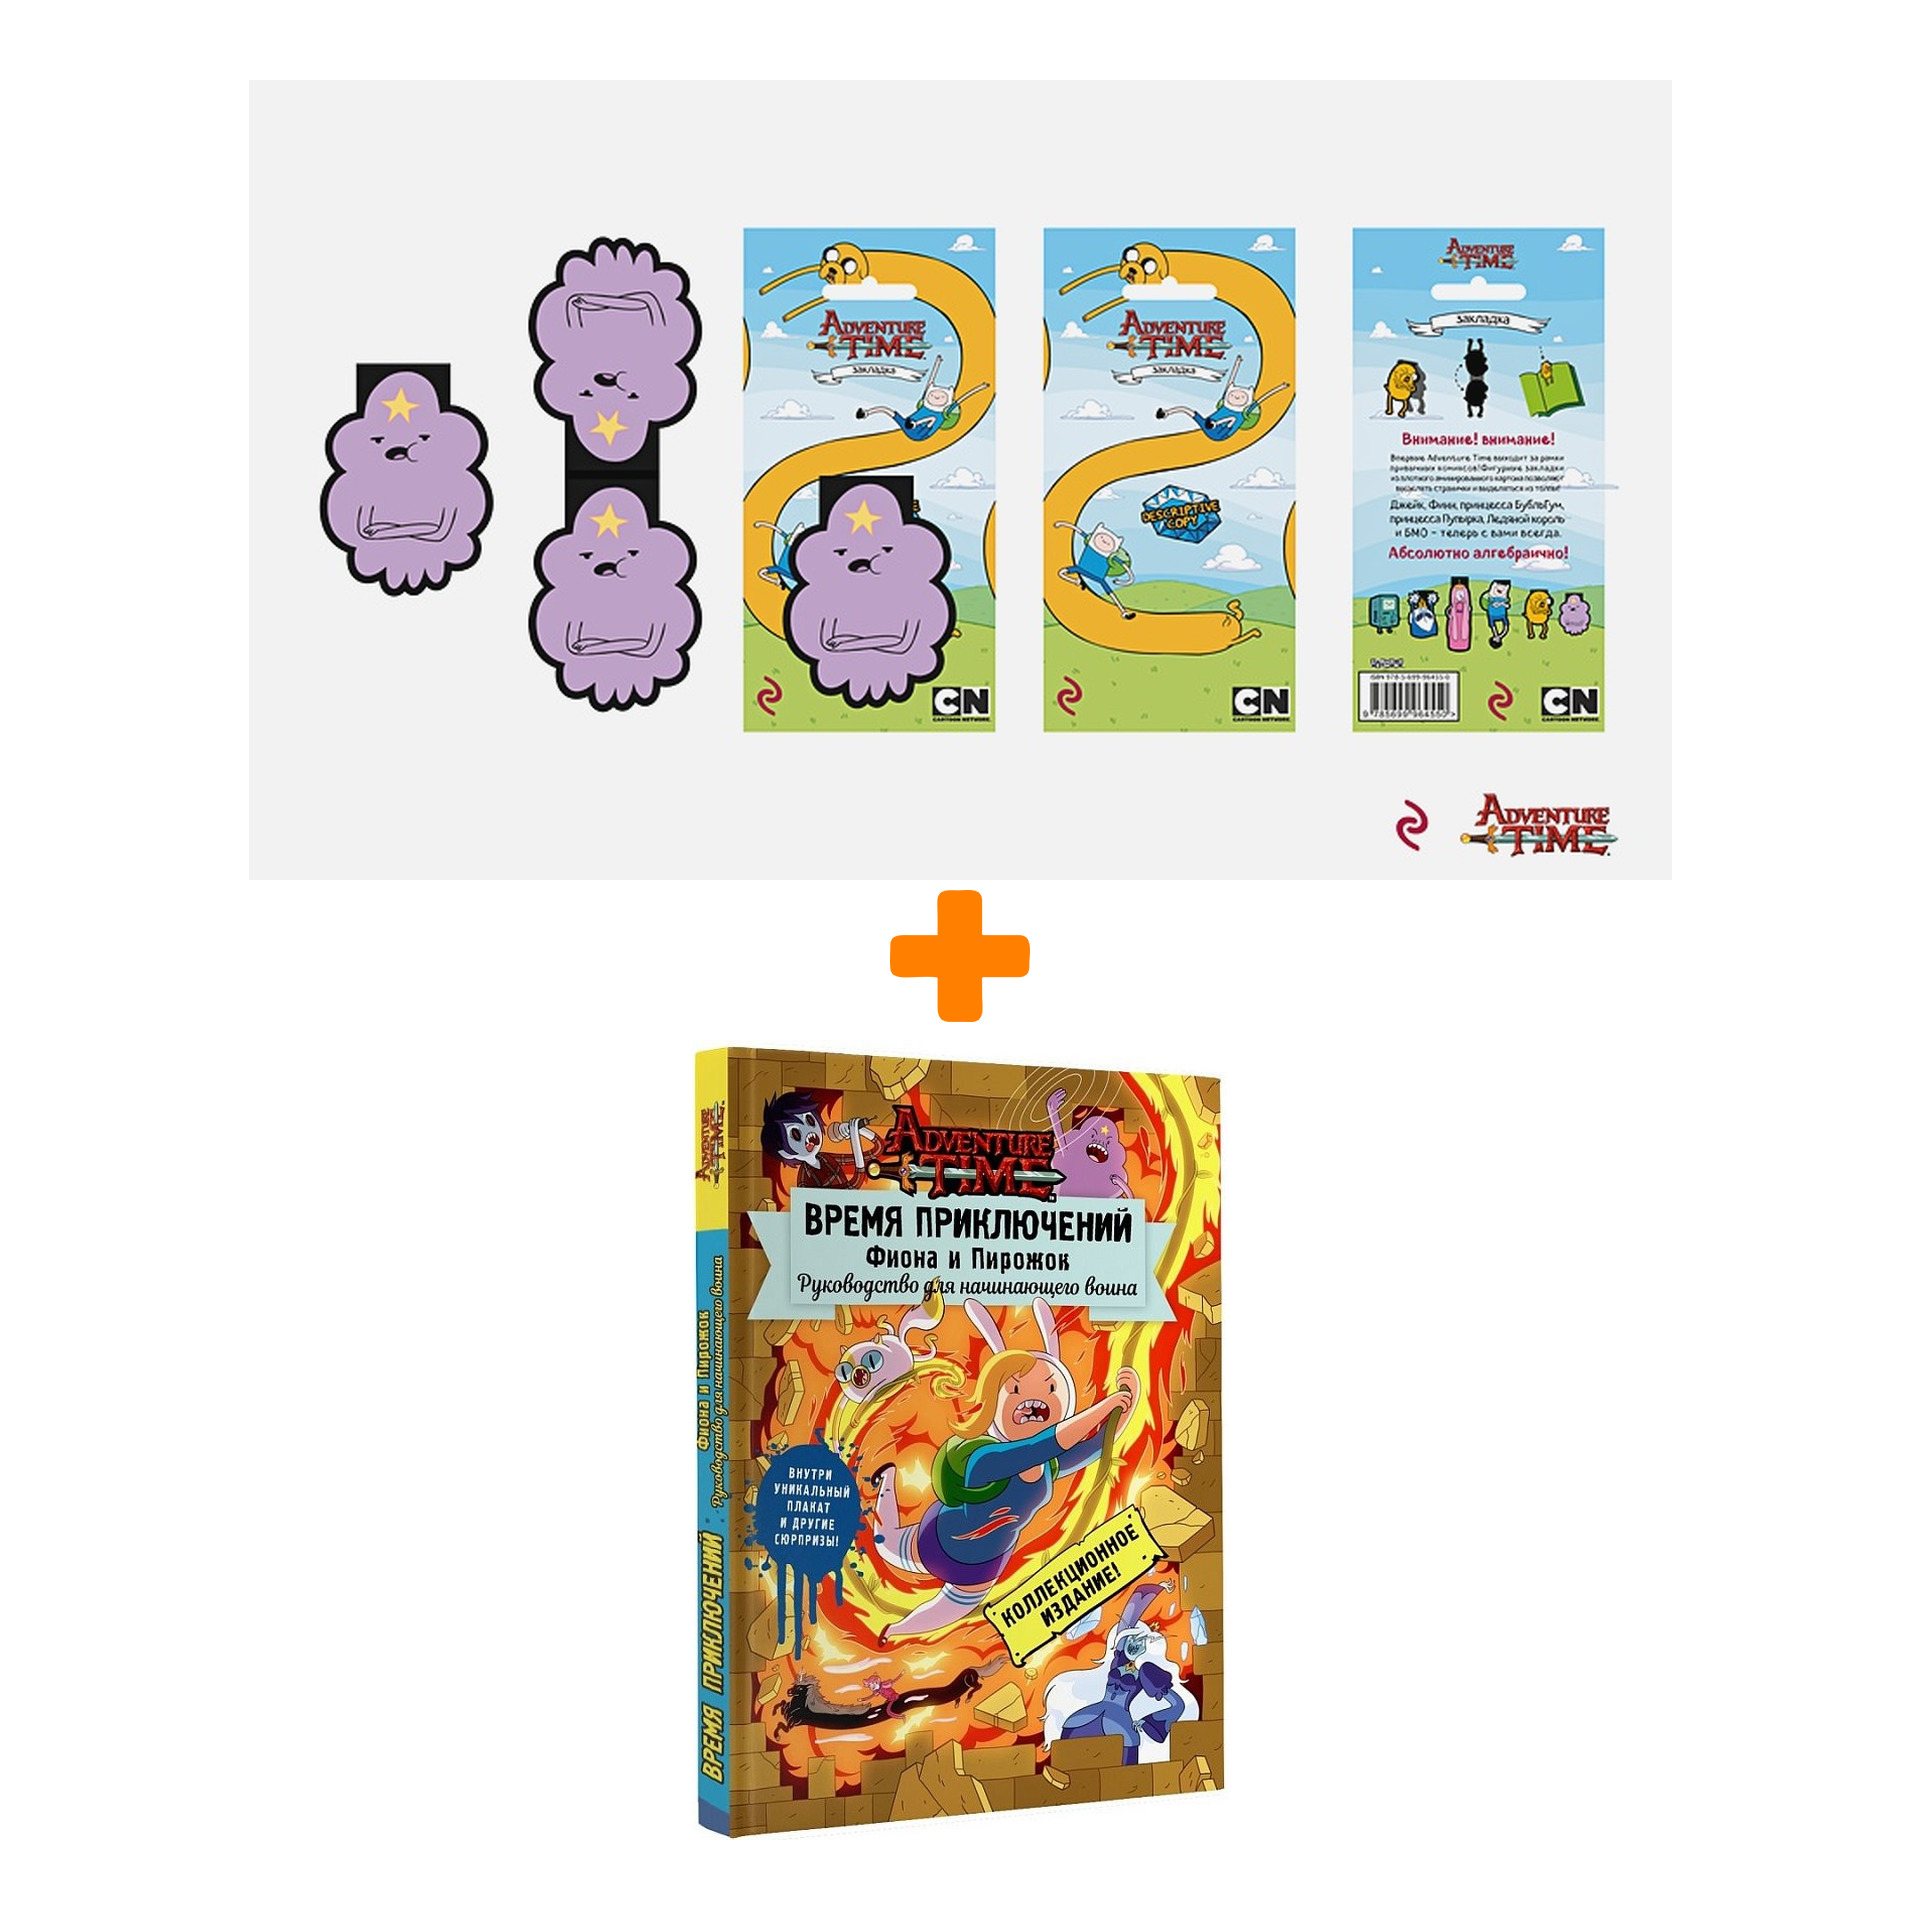 Набор Adventure Time закладка + книга Фиона и Пирожок Руководство для начинающего воина